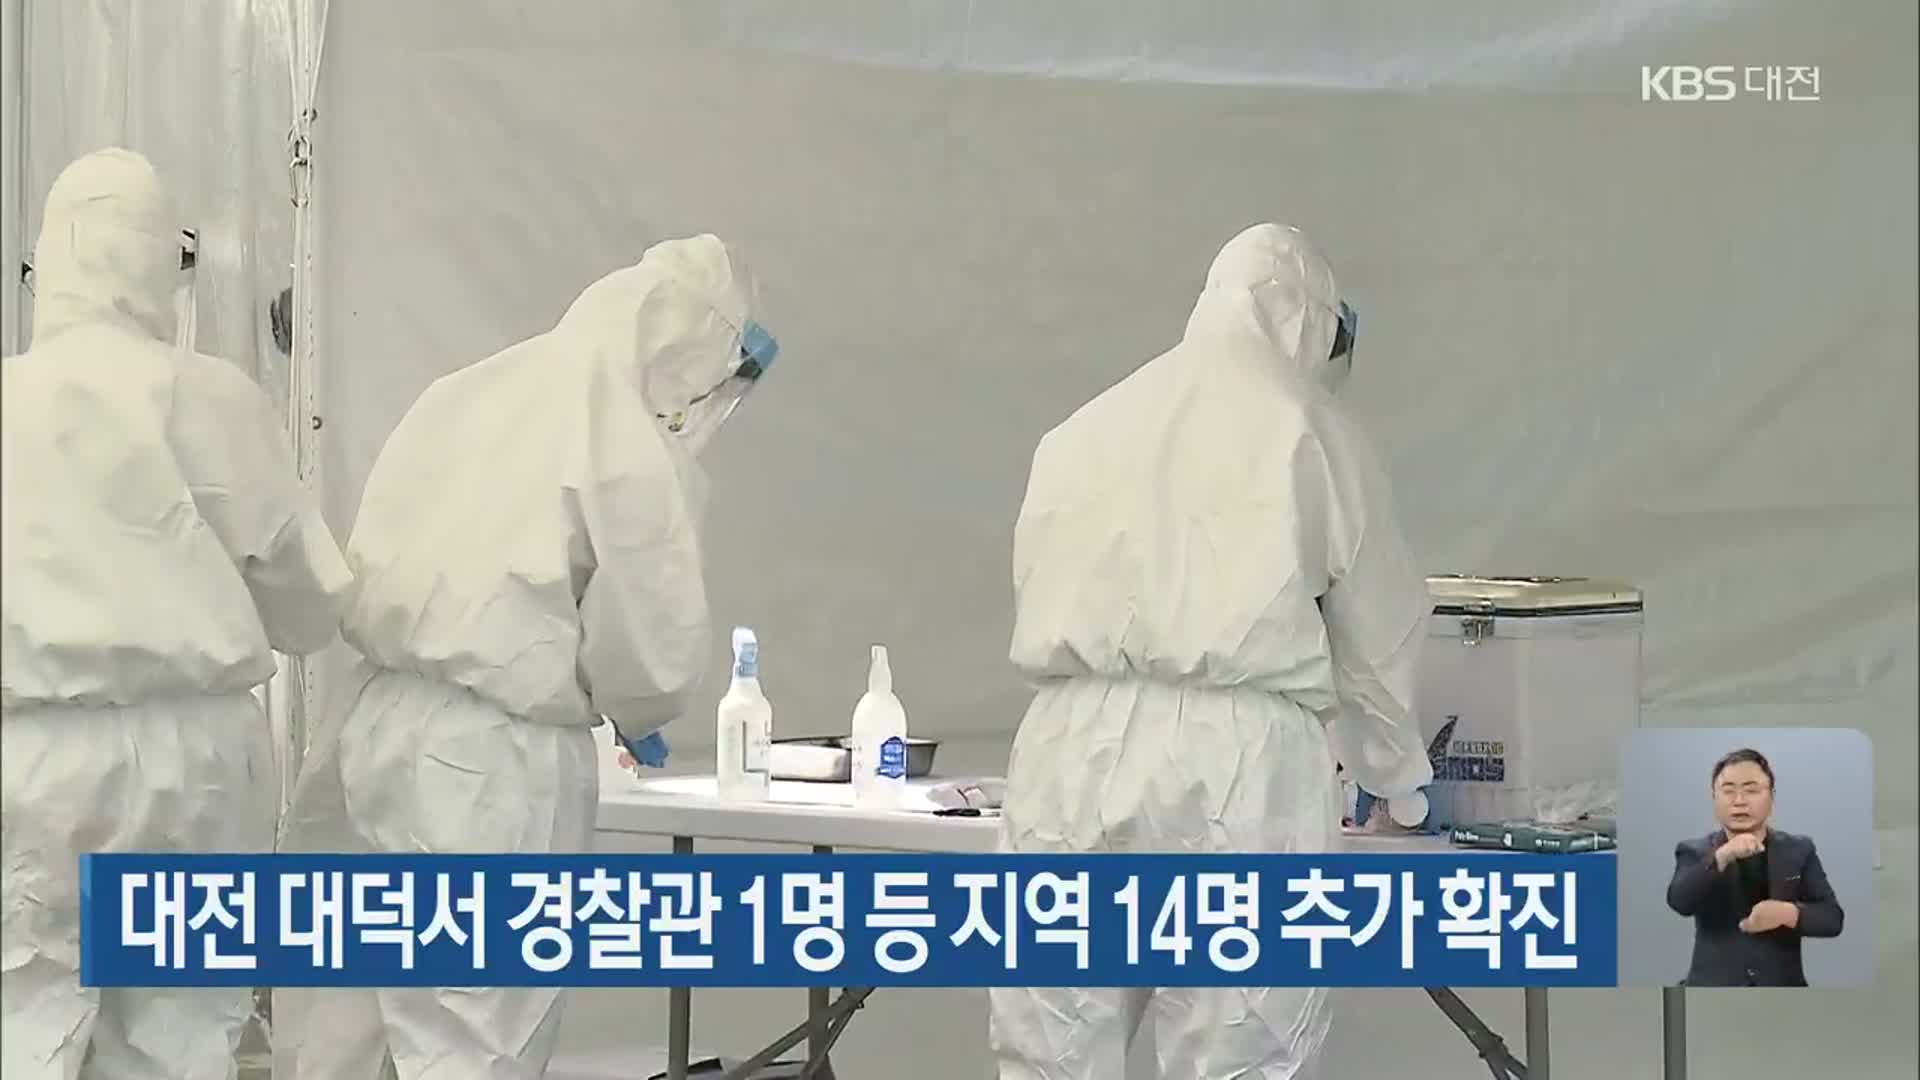 대전 대덕서 경찰관 1명 등 지역 14명 추가 확진